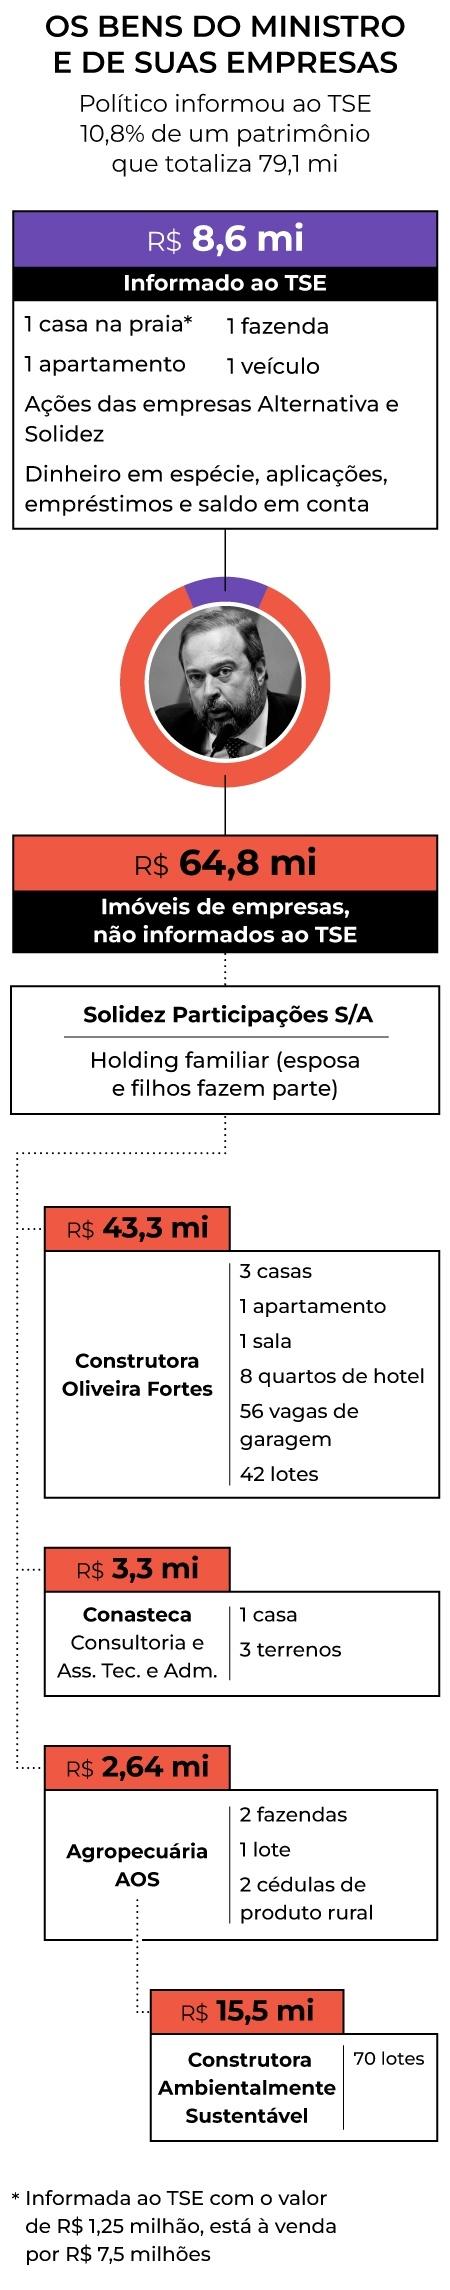 Prime - Patrimônio ministro Alexandre Silveira - Esquema - Arte/UOL - Arte/UOL